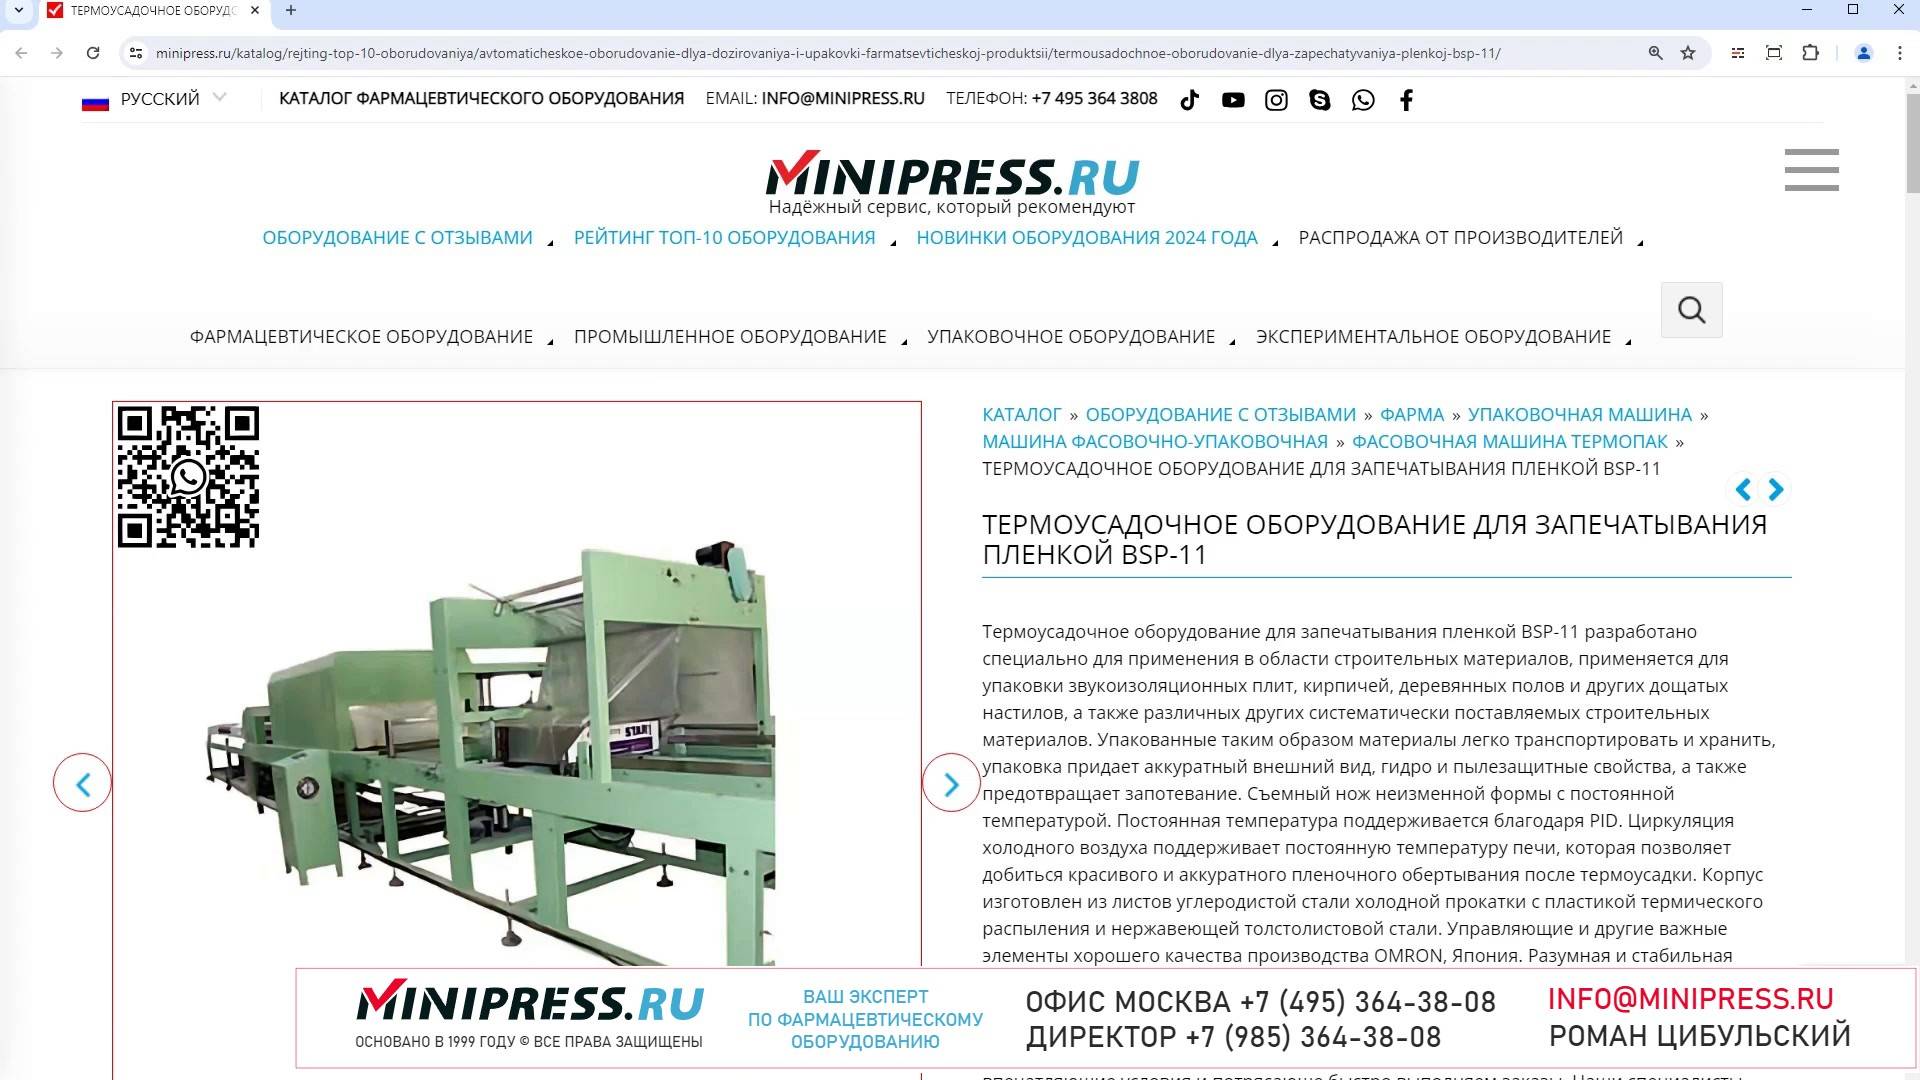 Minipress.ru Термоусадочное оборудование для запечатывания пленкой BSP-11